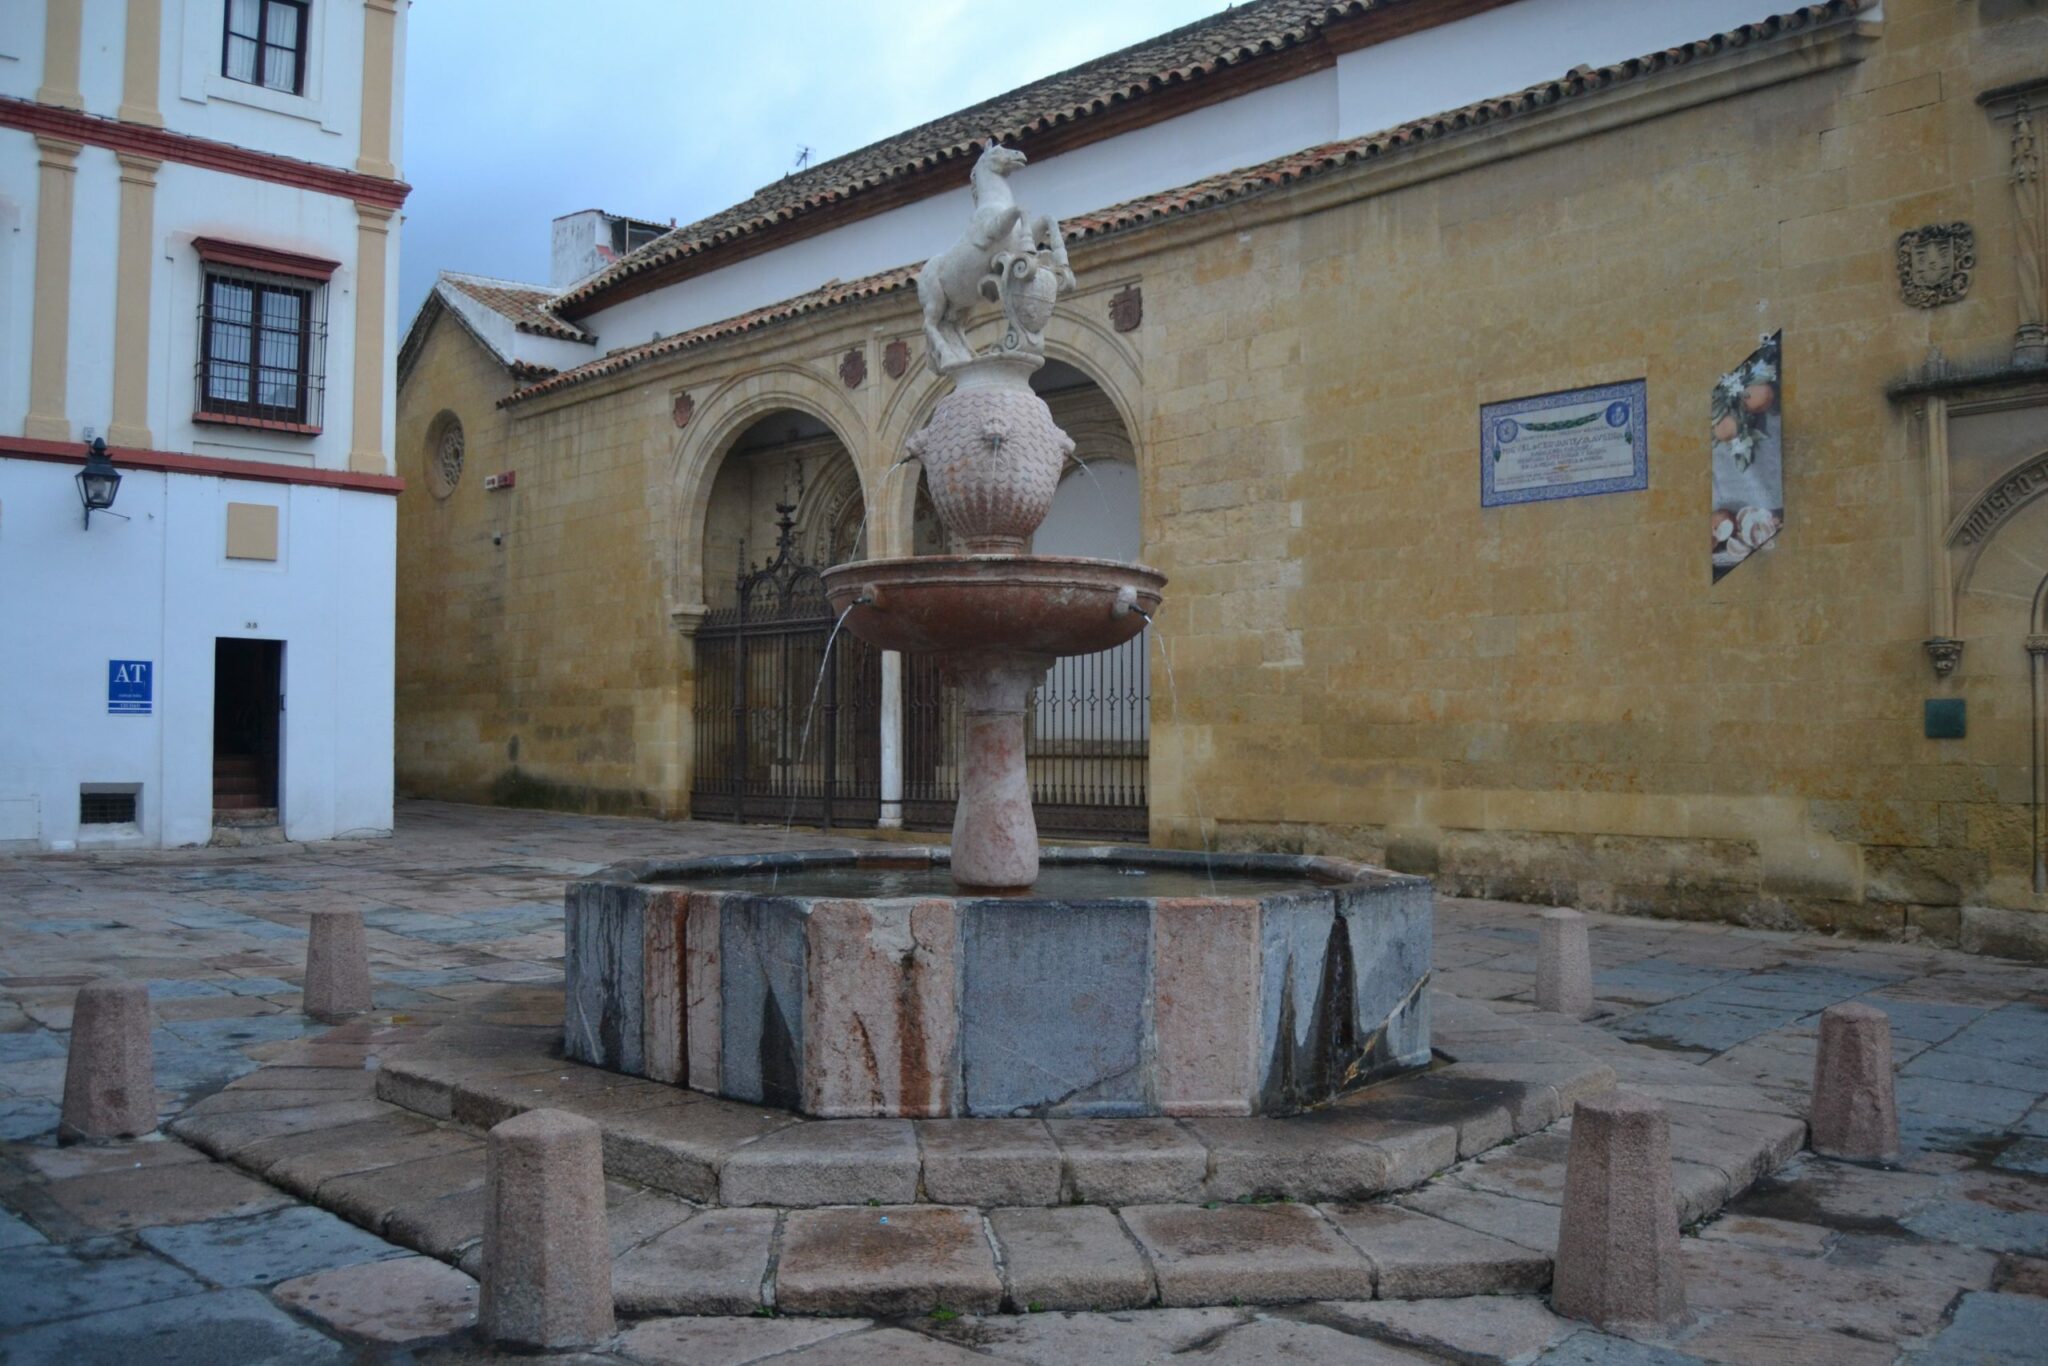 Plaza del Potro